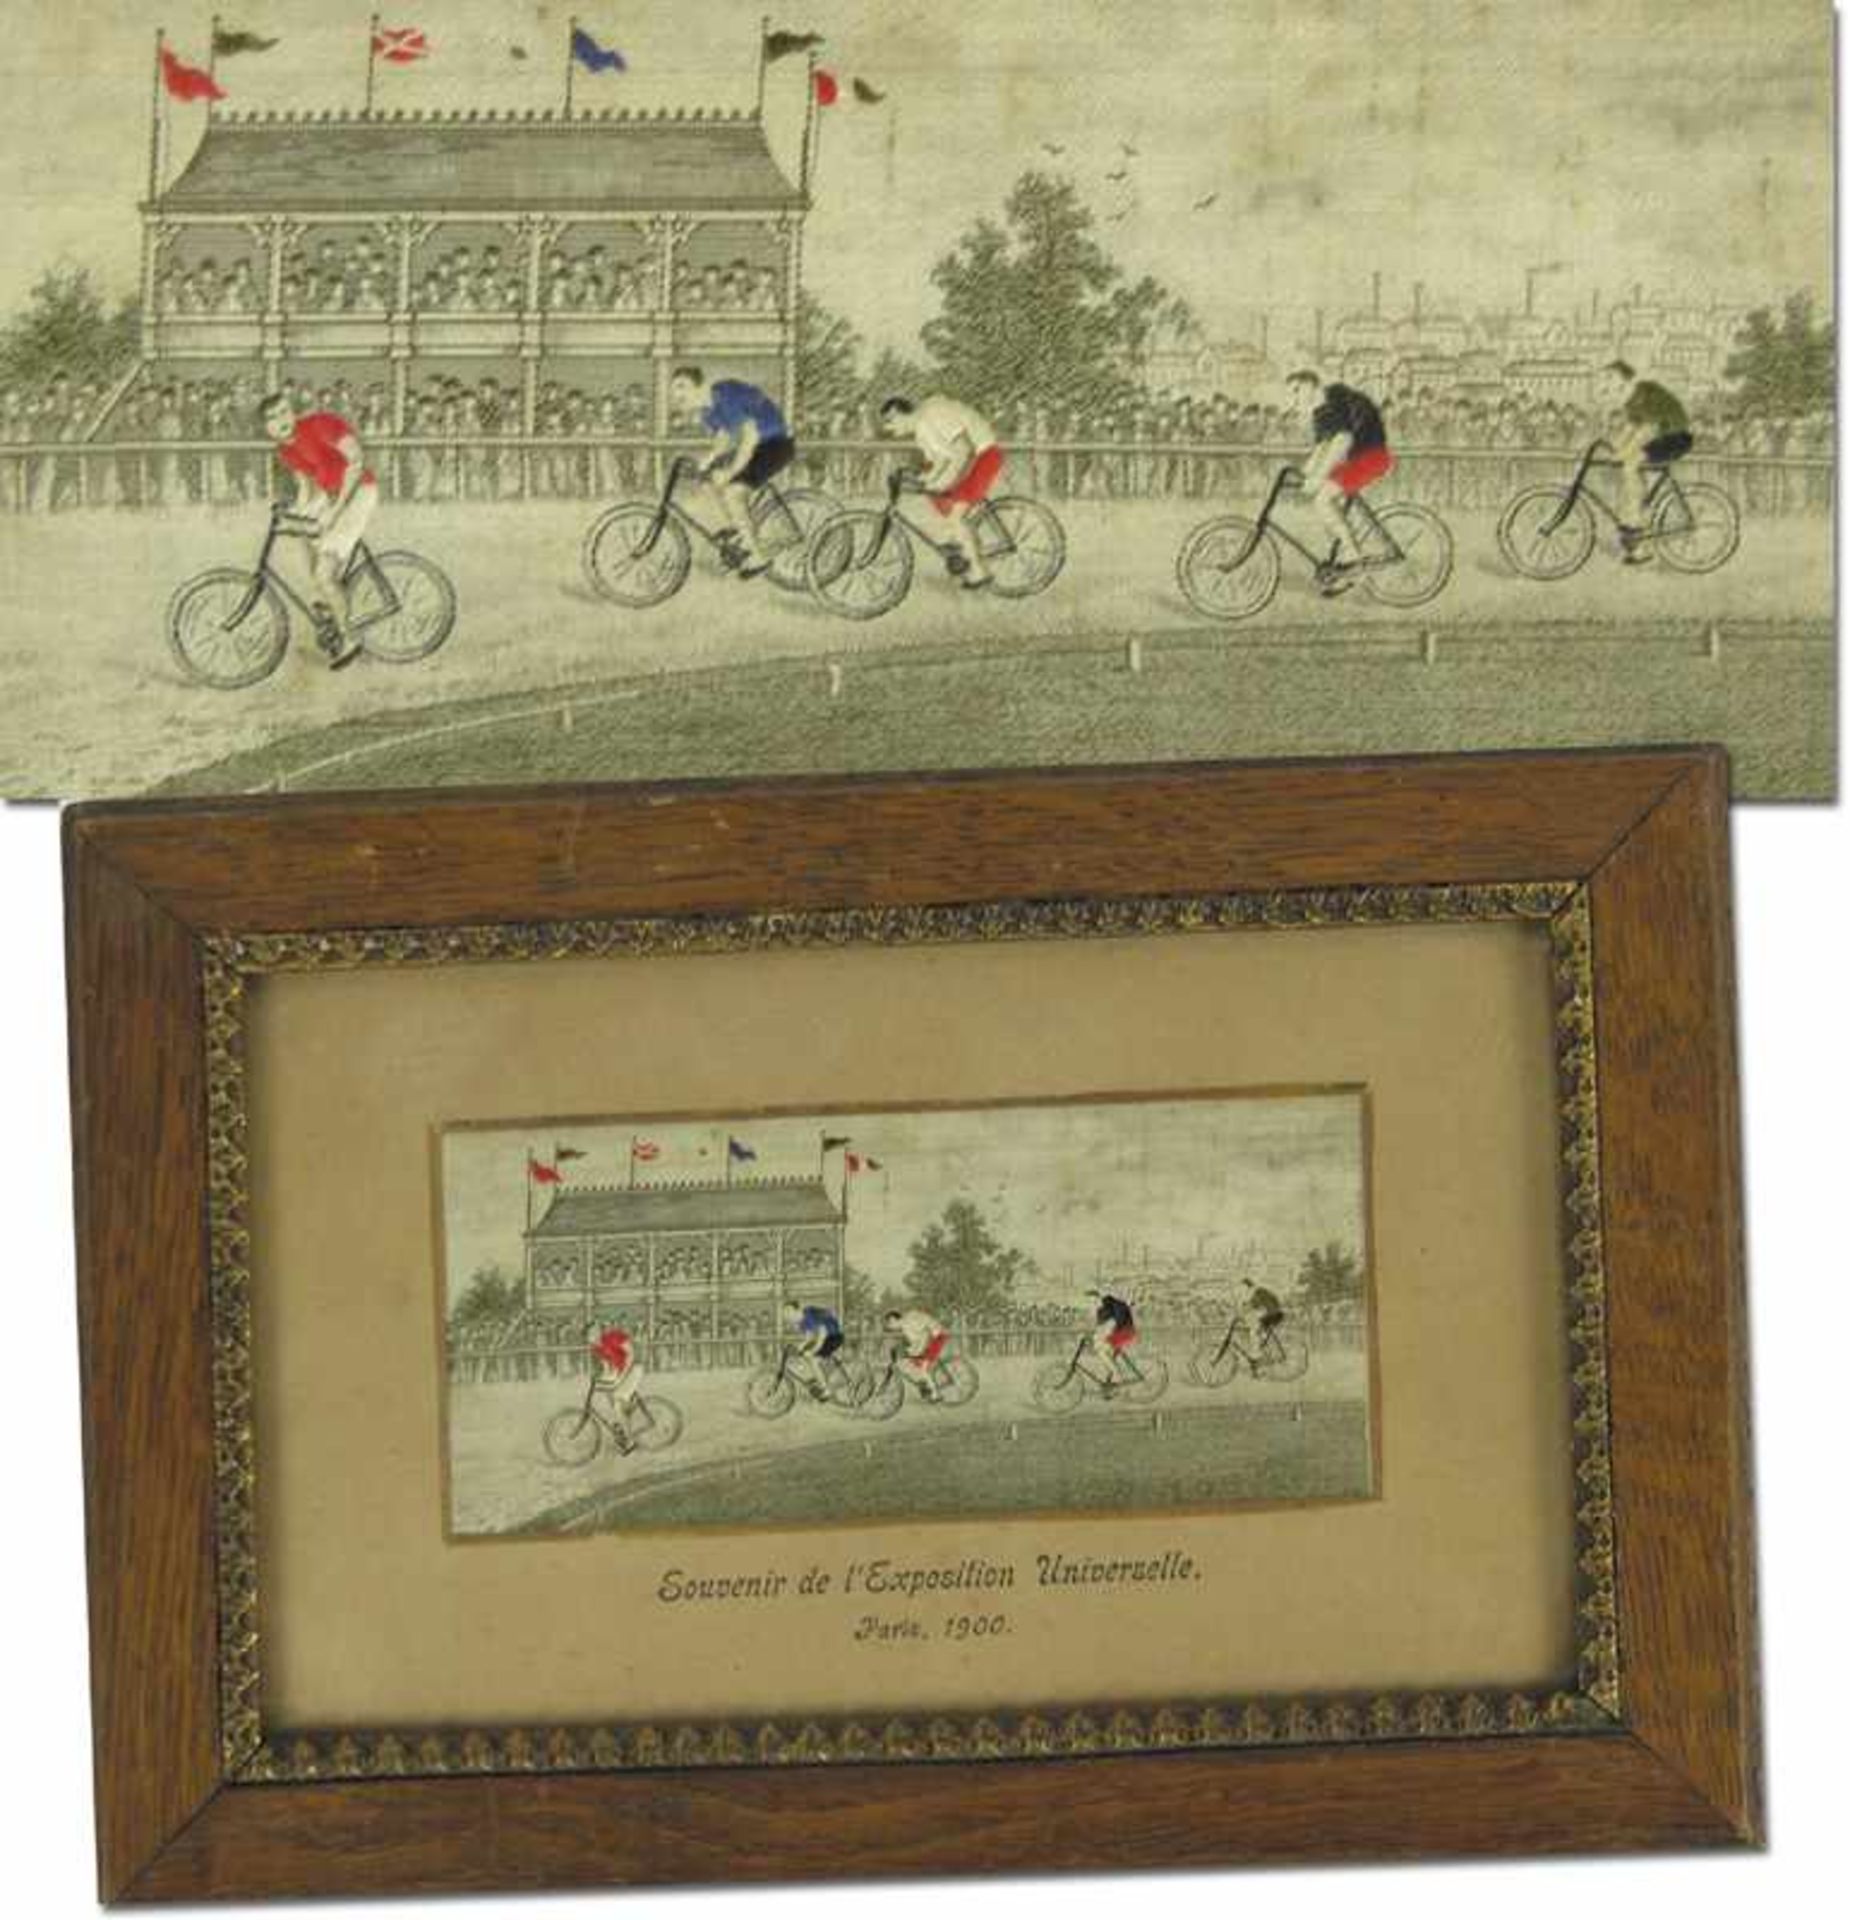 Olympic Games 1900 Cycling silk picture Stadium - "Souvenir de l´Exposition Universelle Paris 1900".